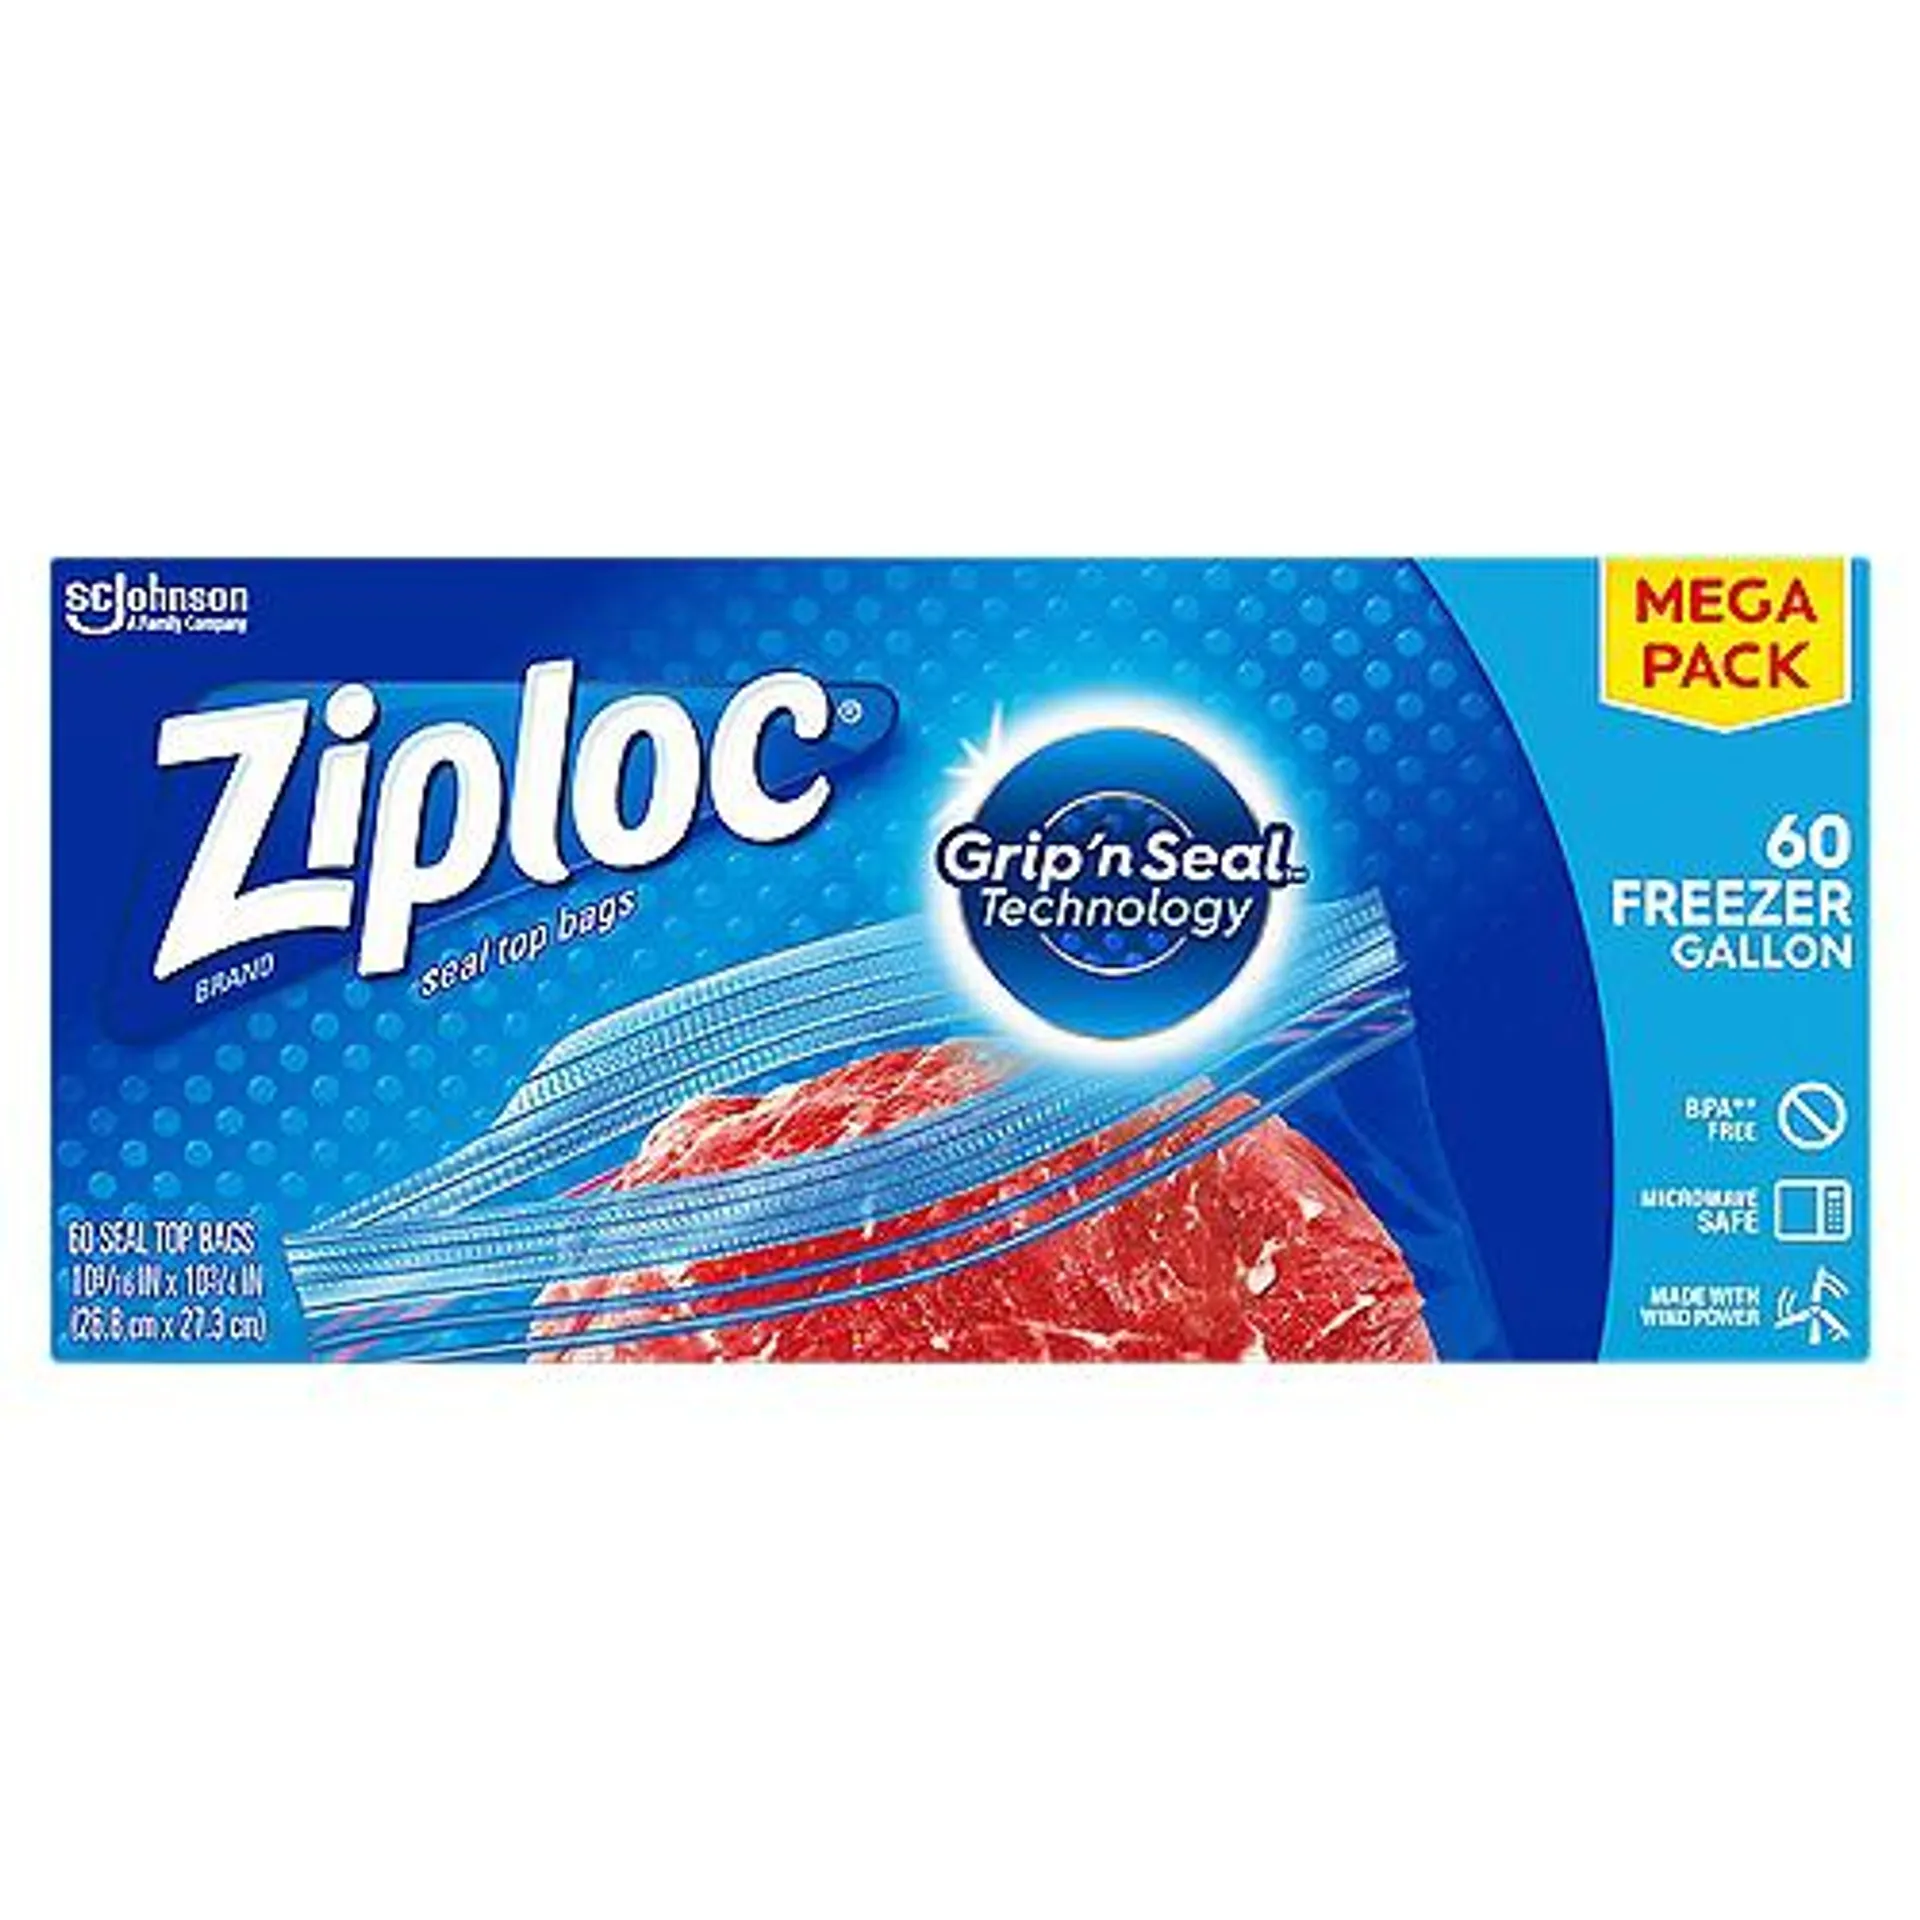 Ziploc Freezer Gallon Seal Top Bags Mega Pack, 60 count